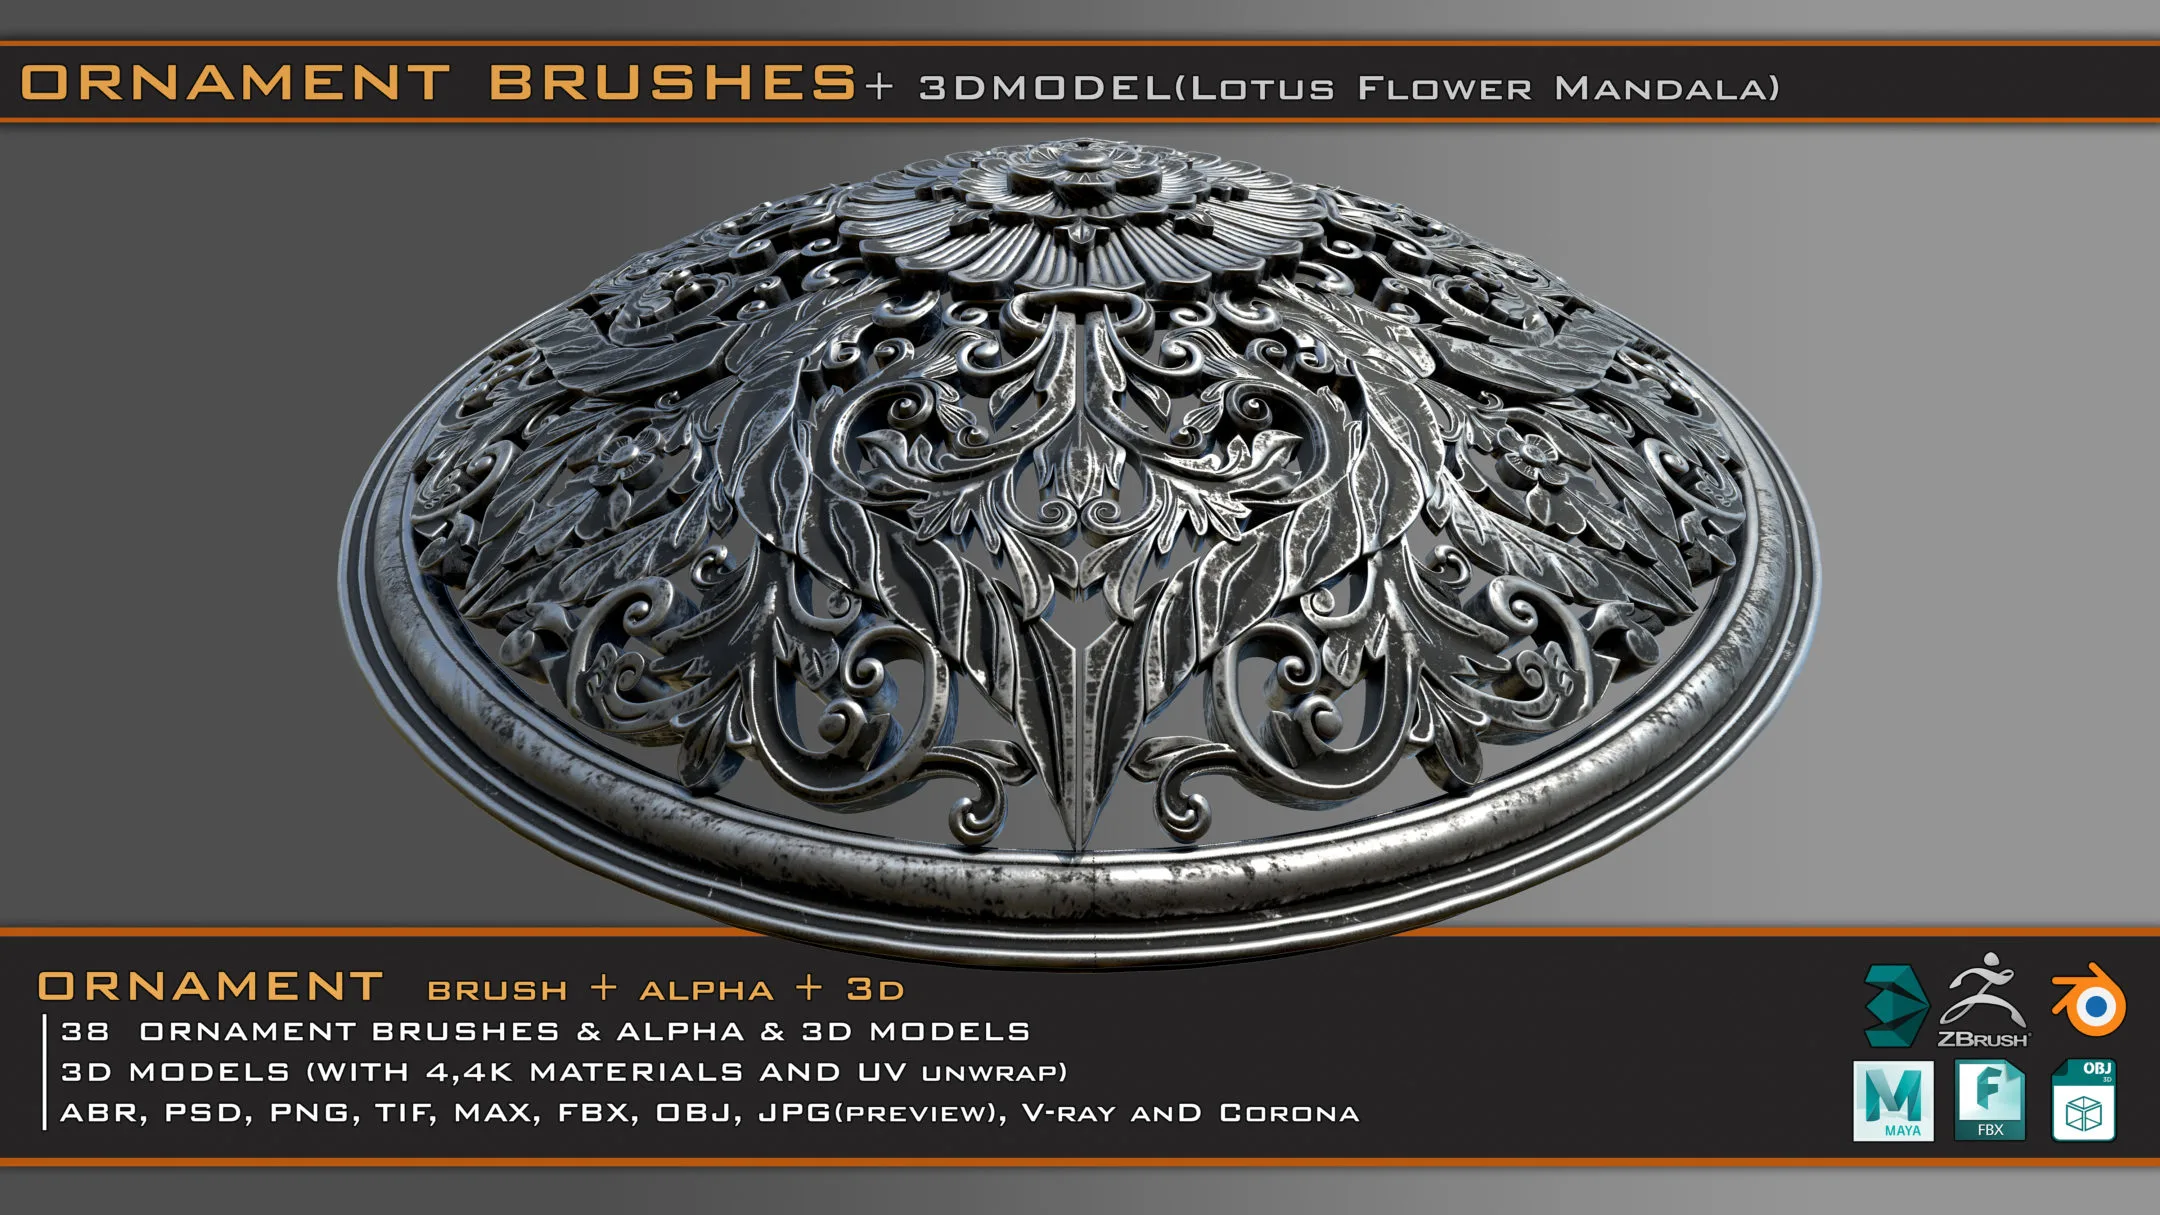 38 Ornament Brushes + 3D Models + 4K PBR Textures